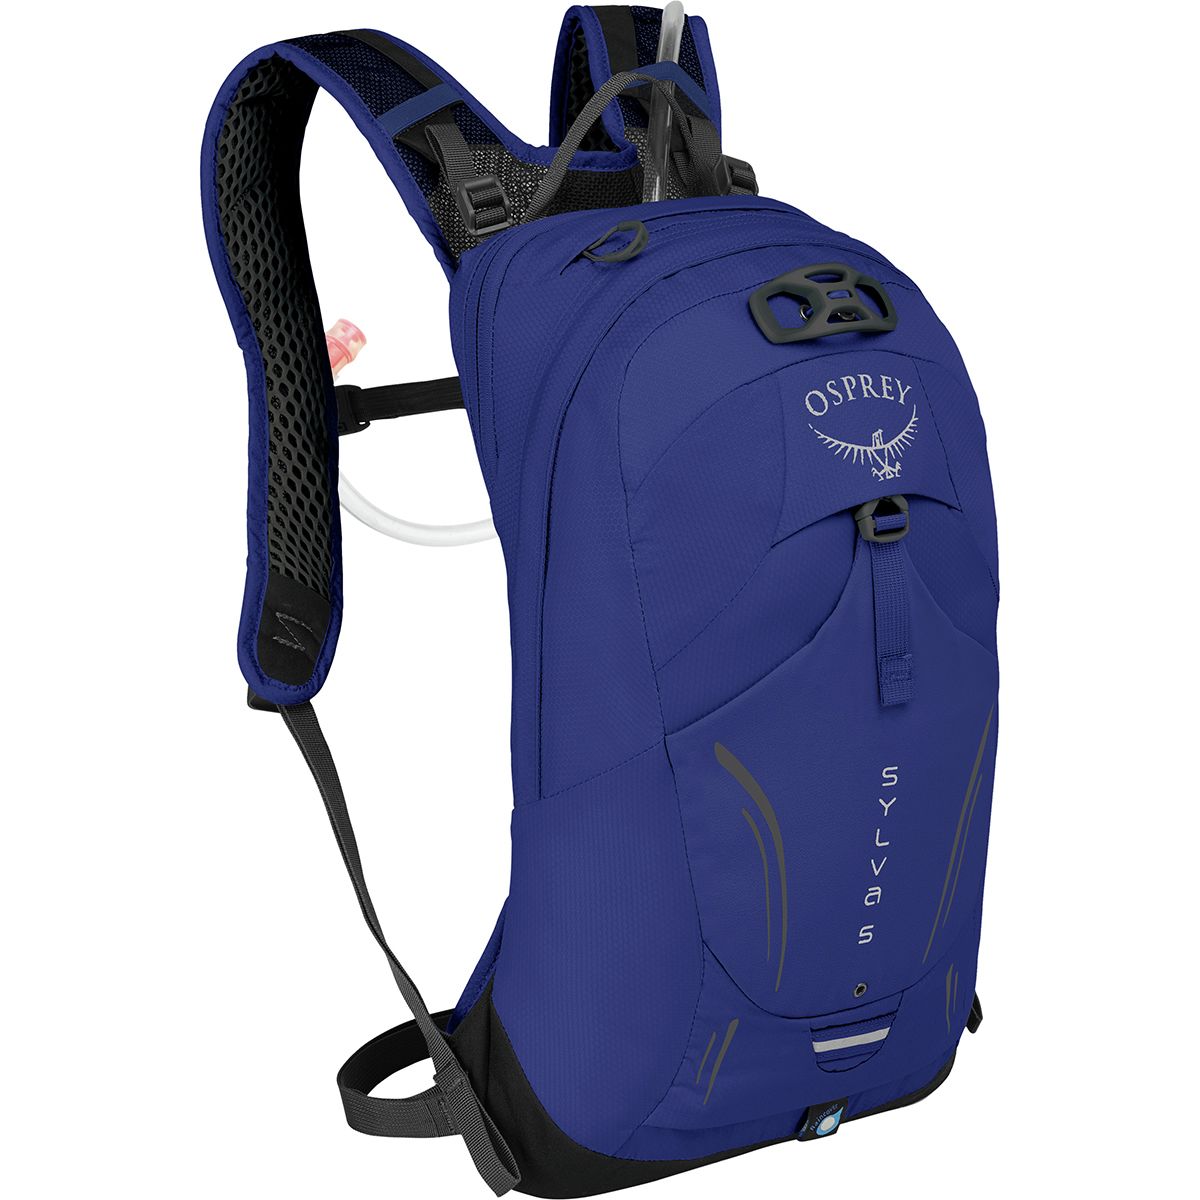 Osprey Packs Sylva 5L Backpack - Women's